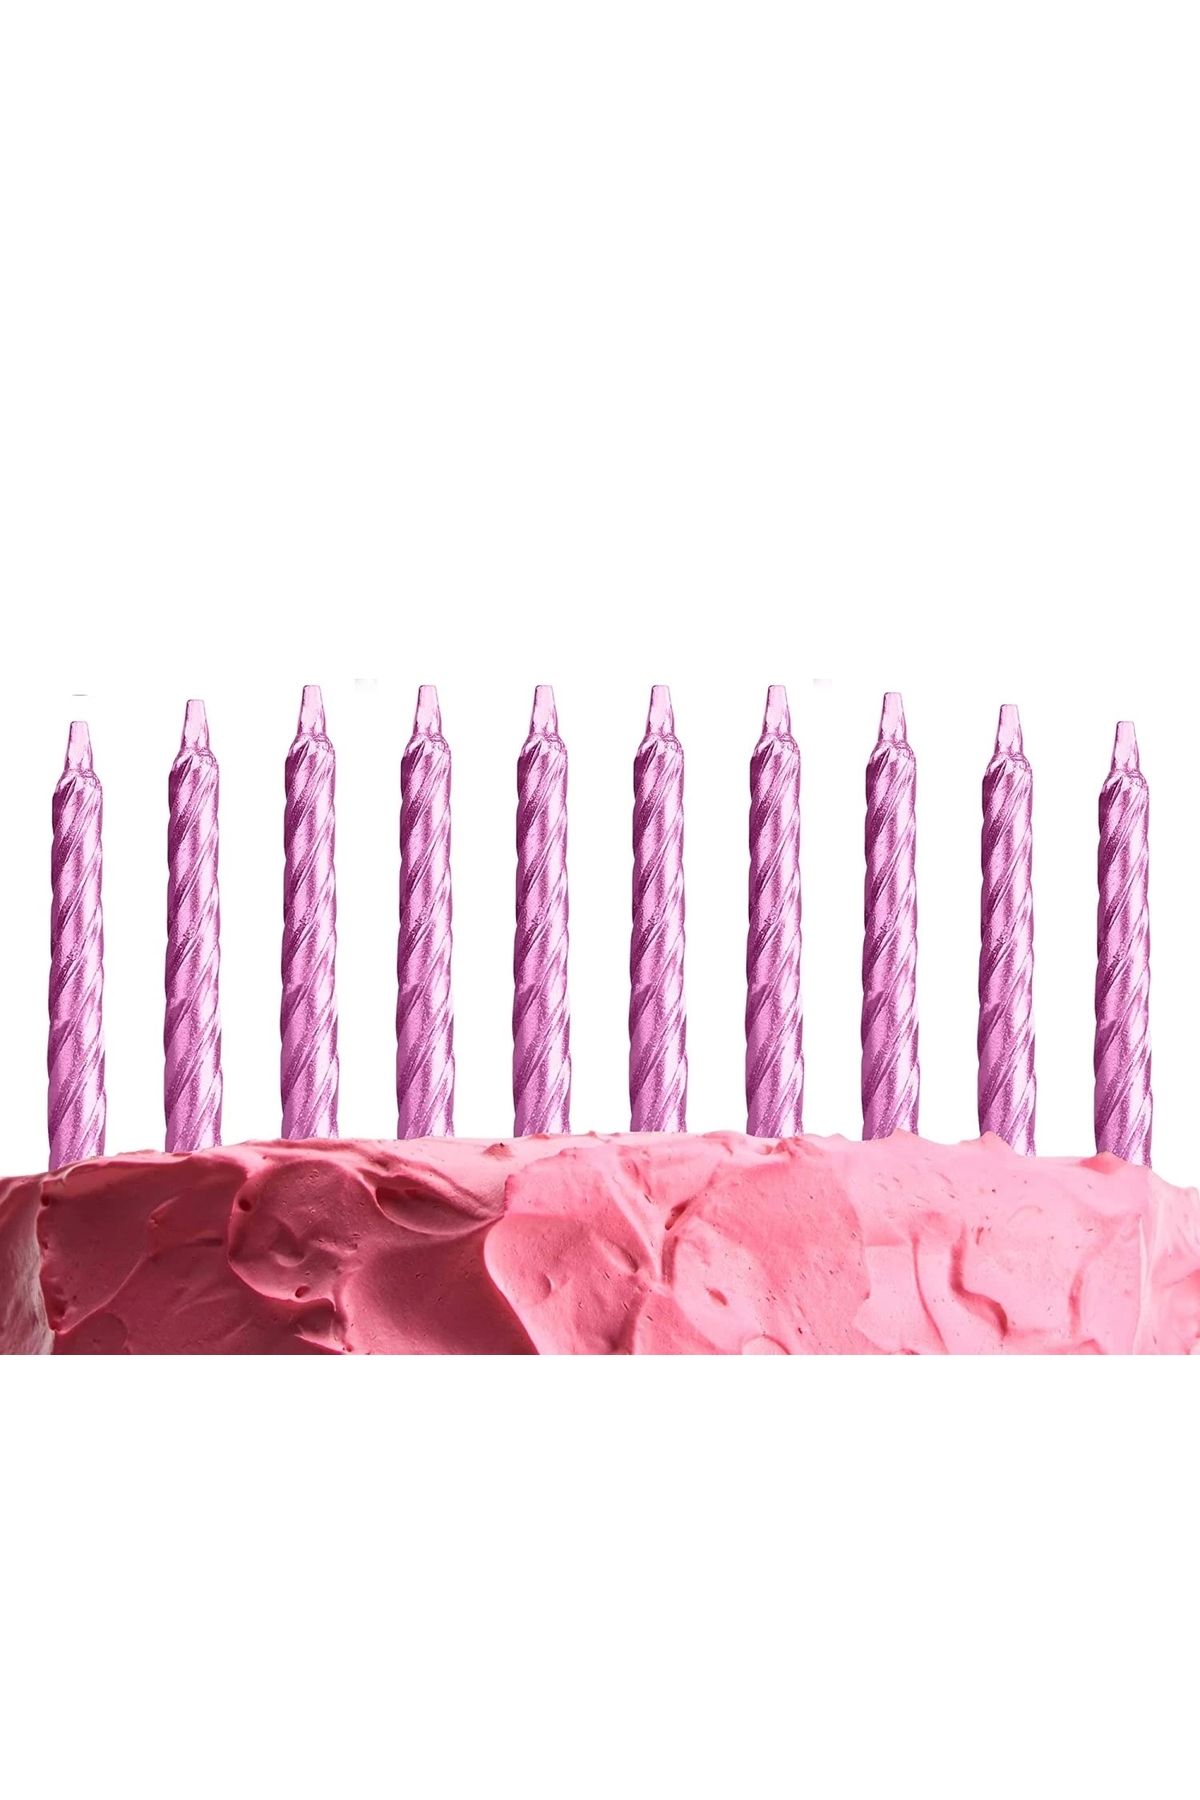 Lisinya Rose Pembe Renk Doğum Günü Evlilik Yıldönümü Pasta Mumları 10 Adet (4172)